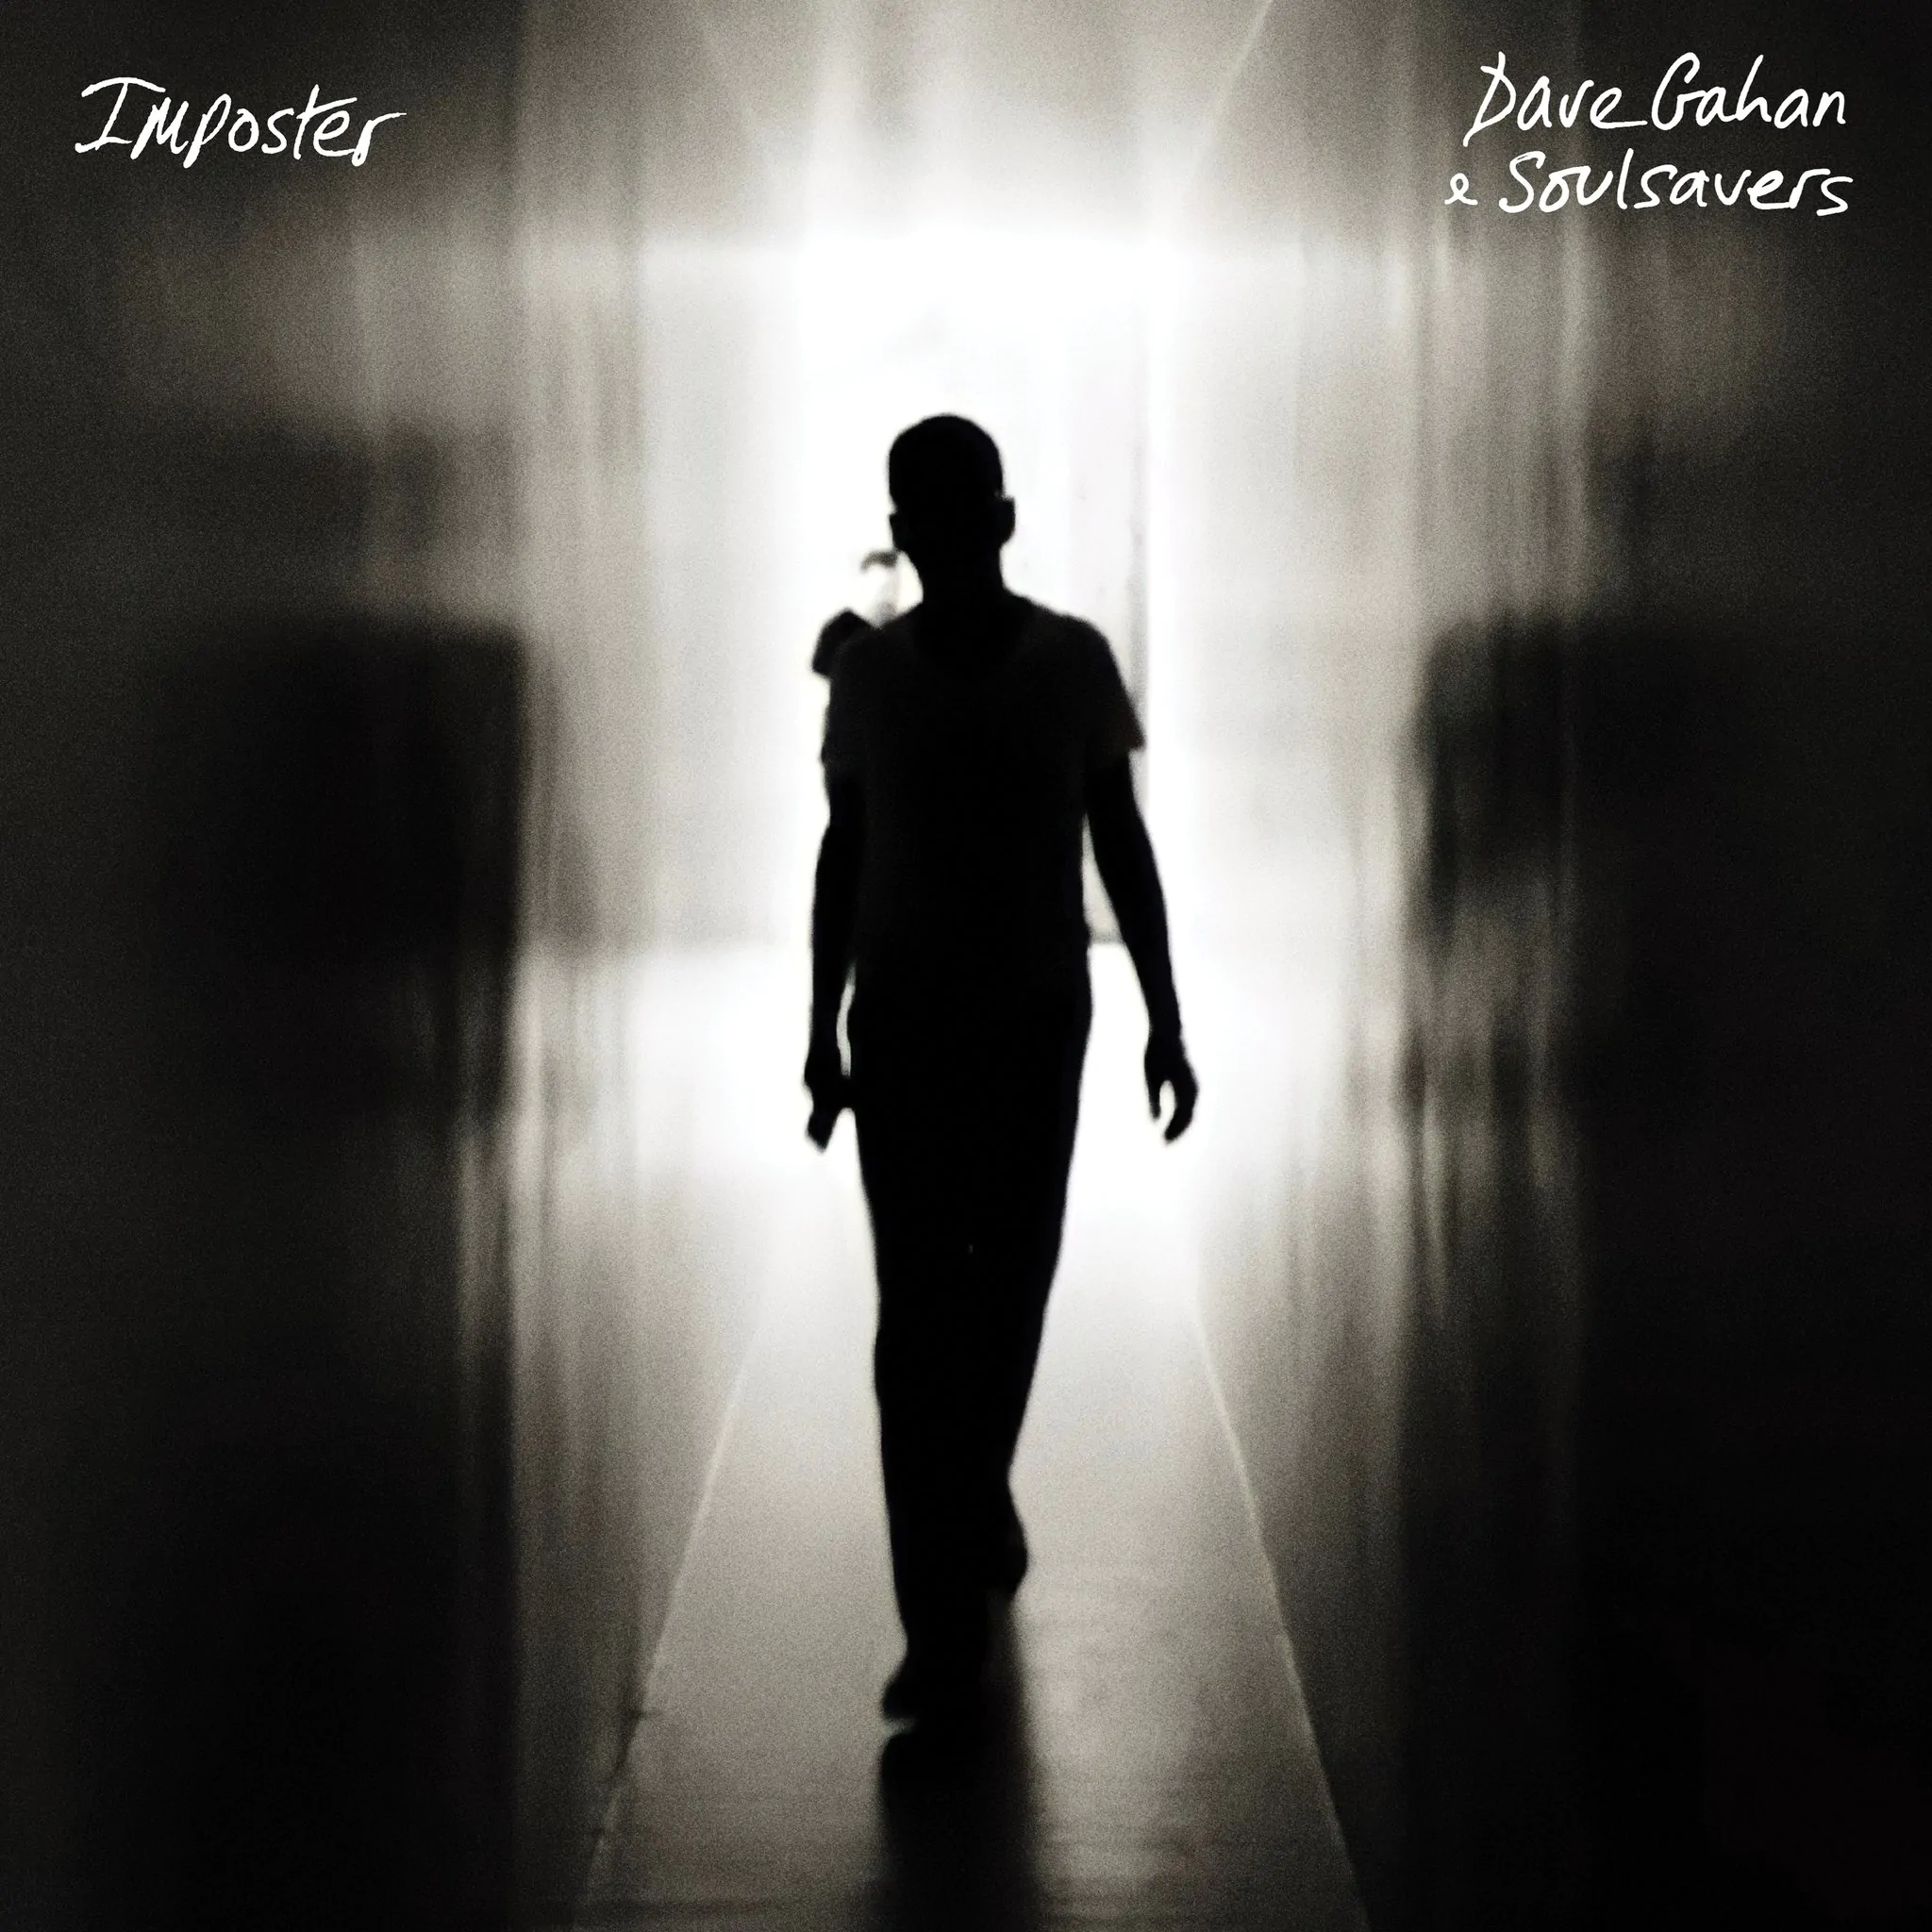 ALBUM REVIEW: Dave Gahan & Soulsavers – Imposter